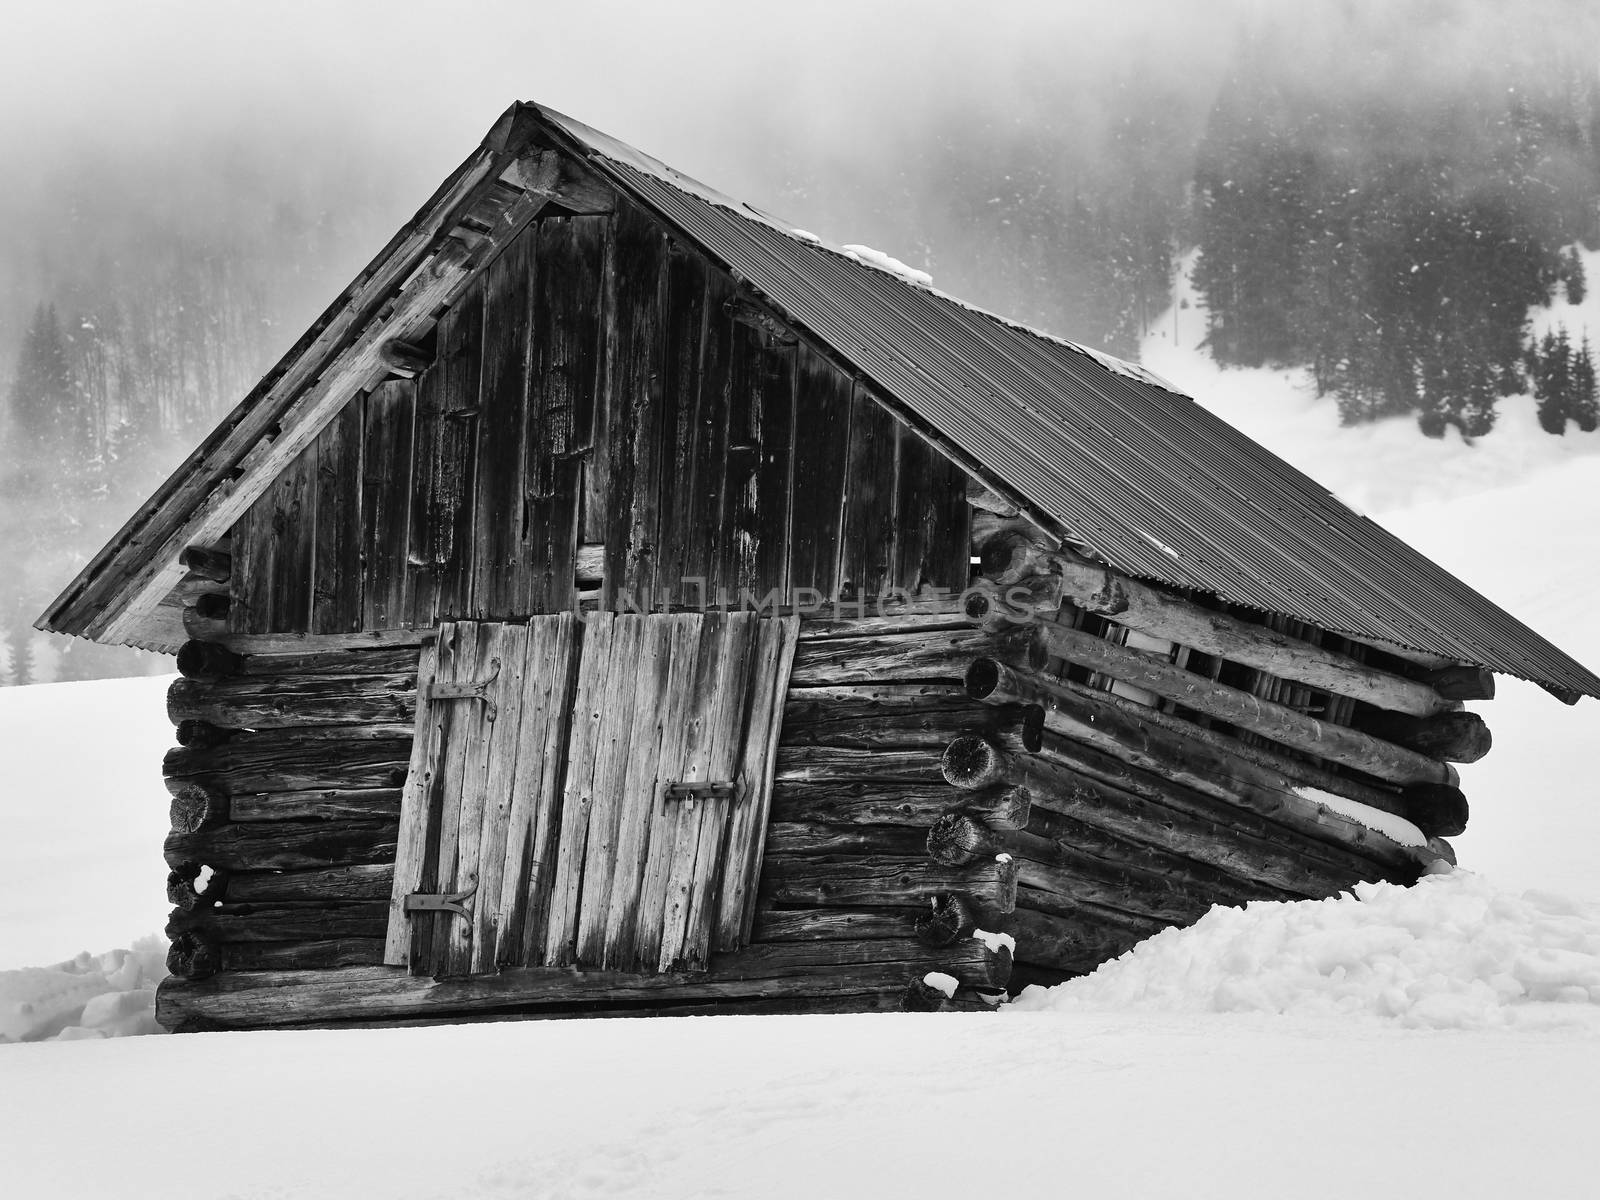 Wooden barn in snowy mountains by ClaudioArnese